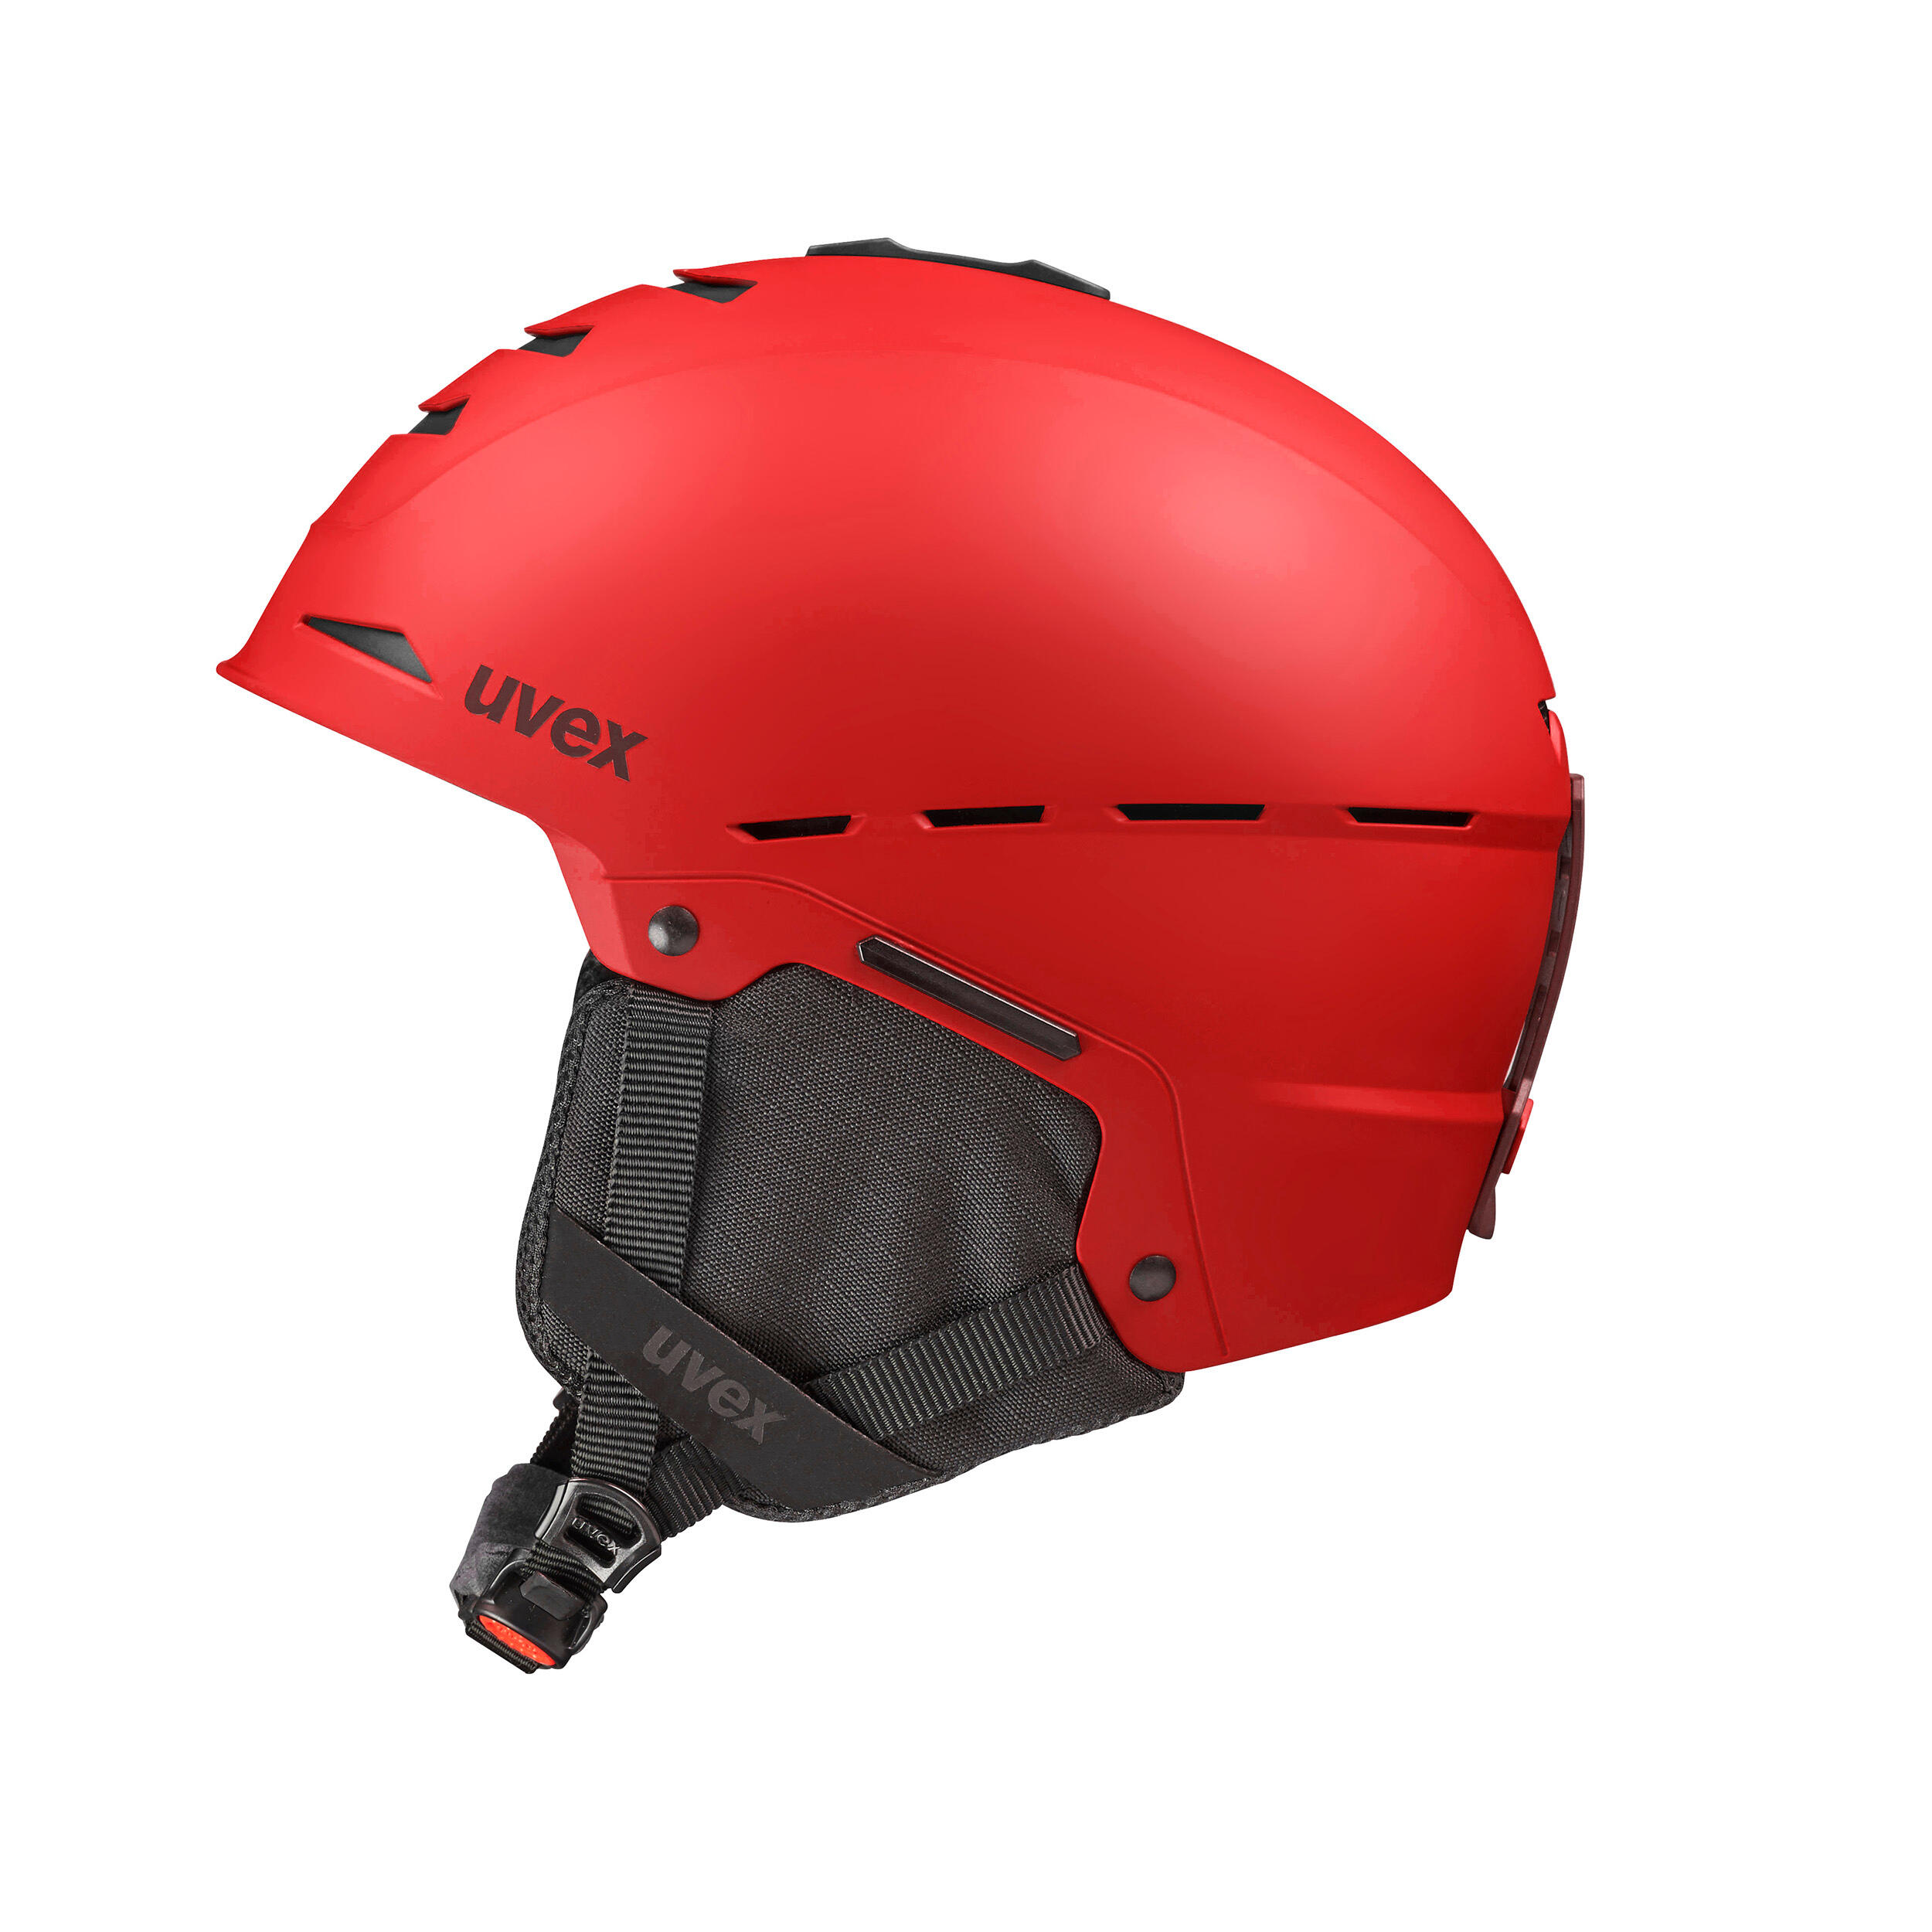 Helmet Legend Red 5/9